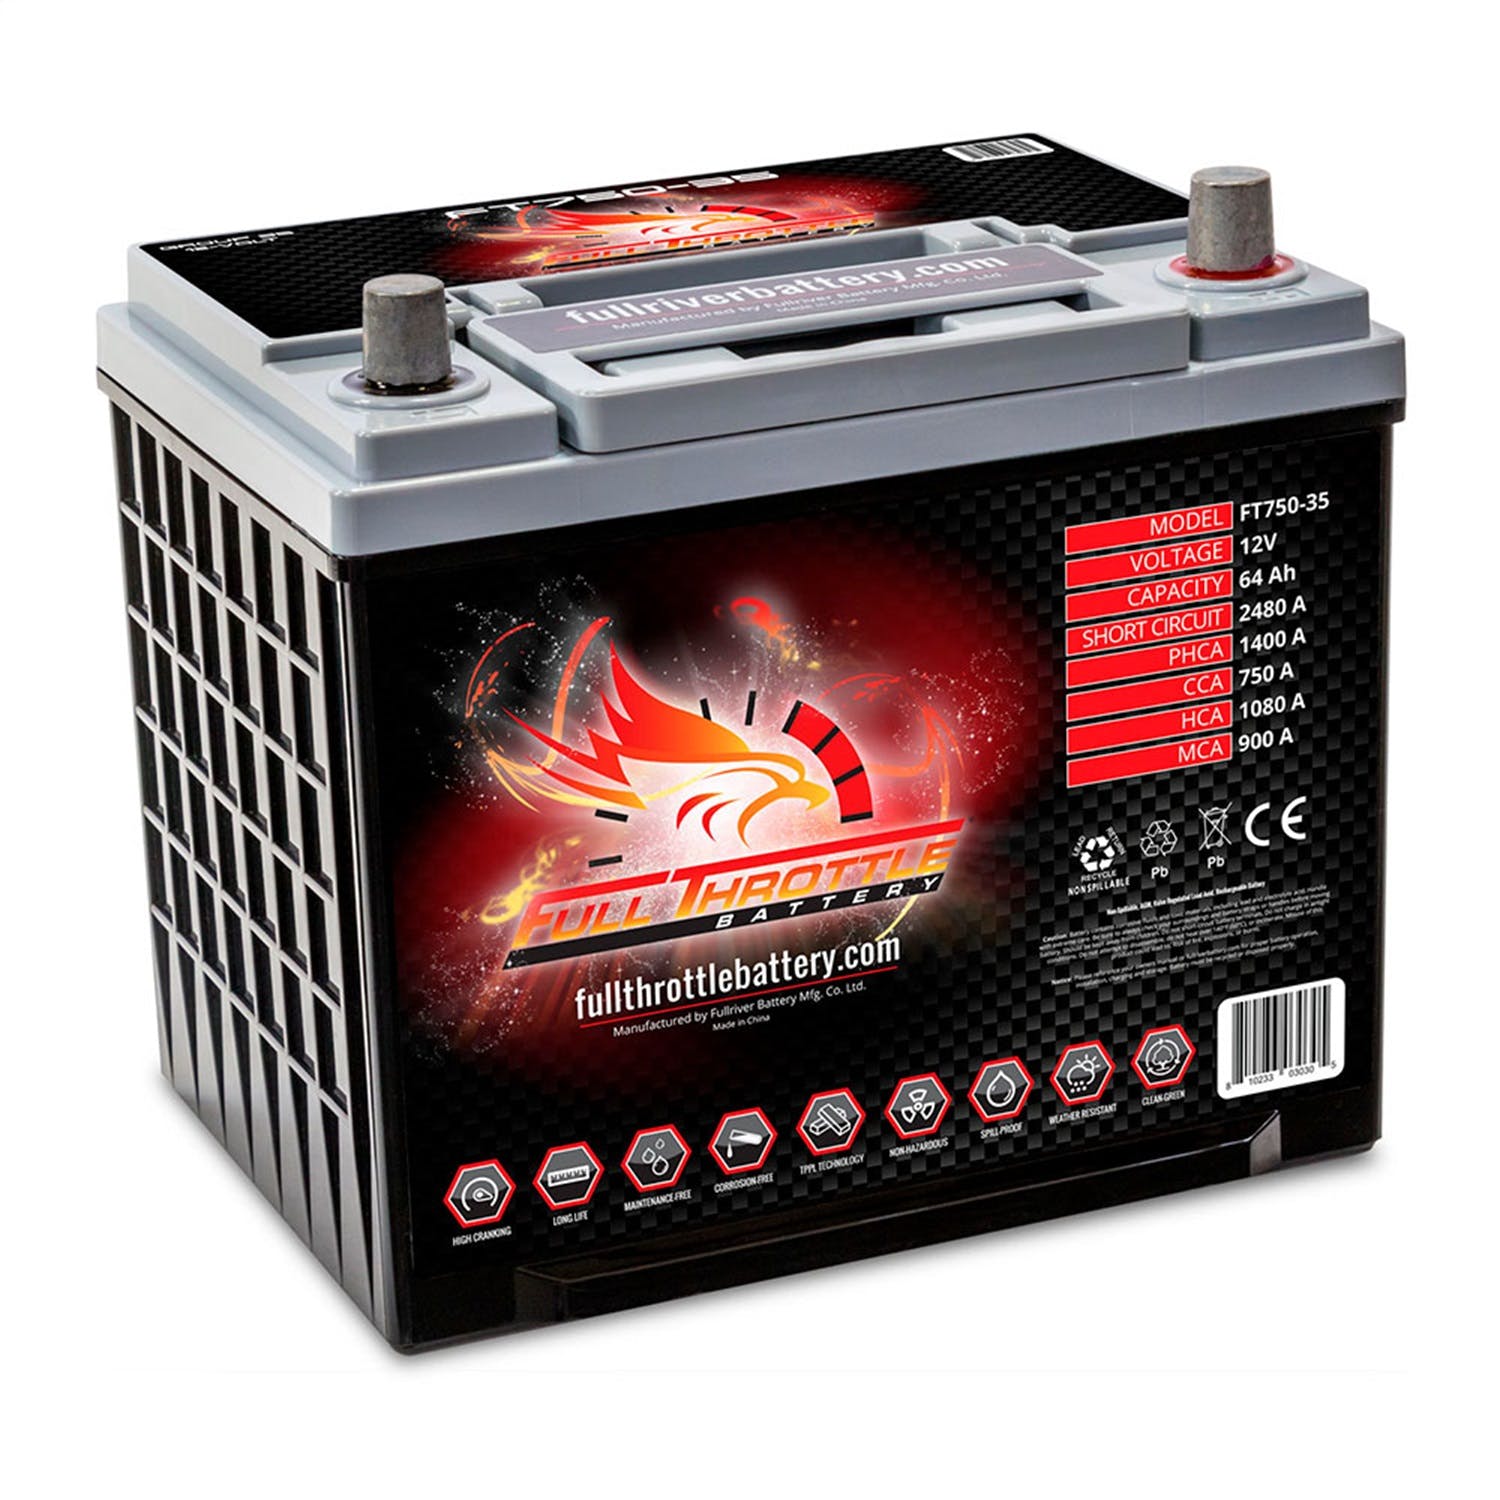 Fullriver Battery FT750-35 Full Throttle 12V Automotive Battery